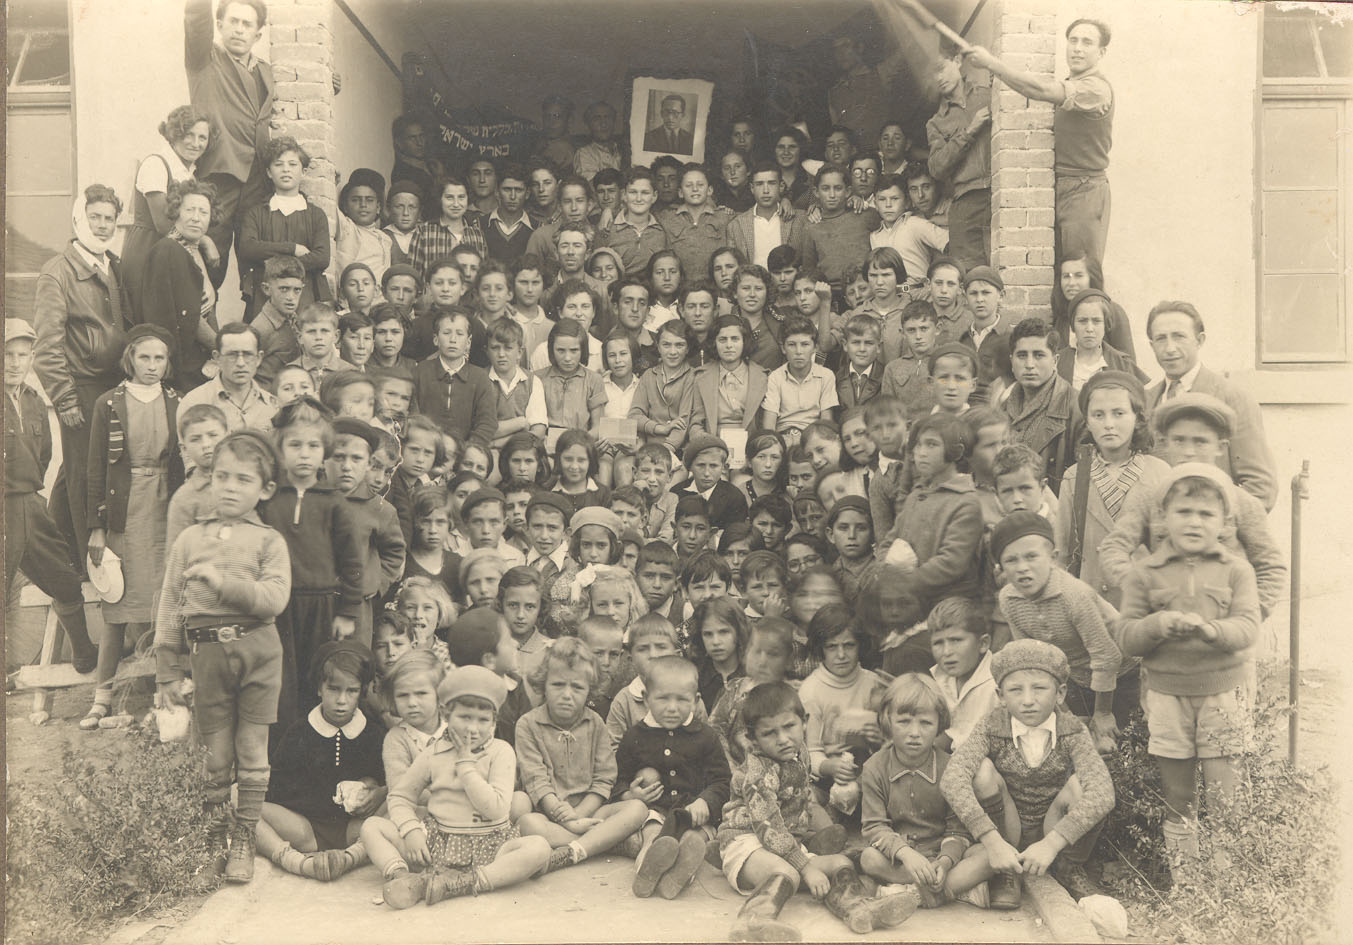 ילדי כל רעננה התאחדו - 1933 כנס האחד במאי בפתח בית העם (בניין העירייה כיום)